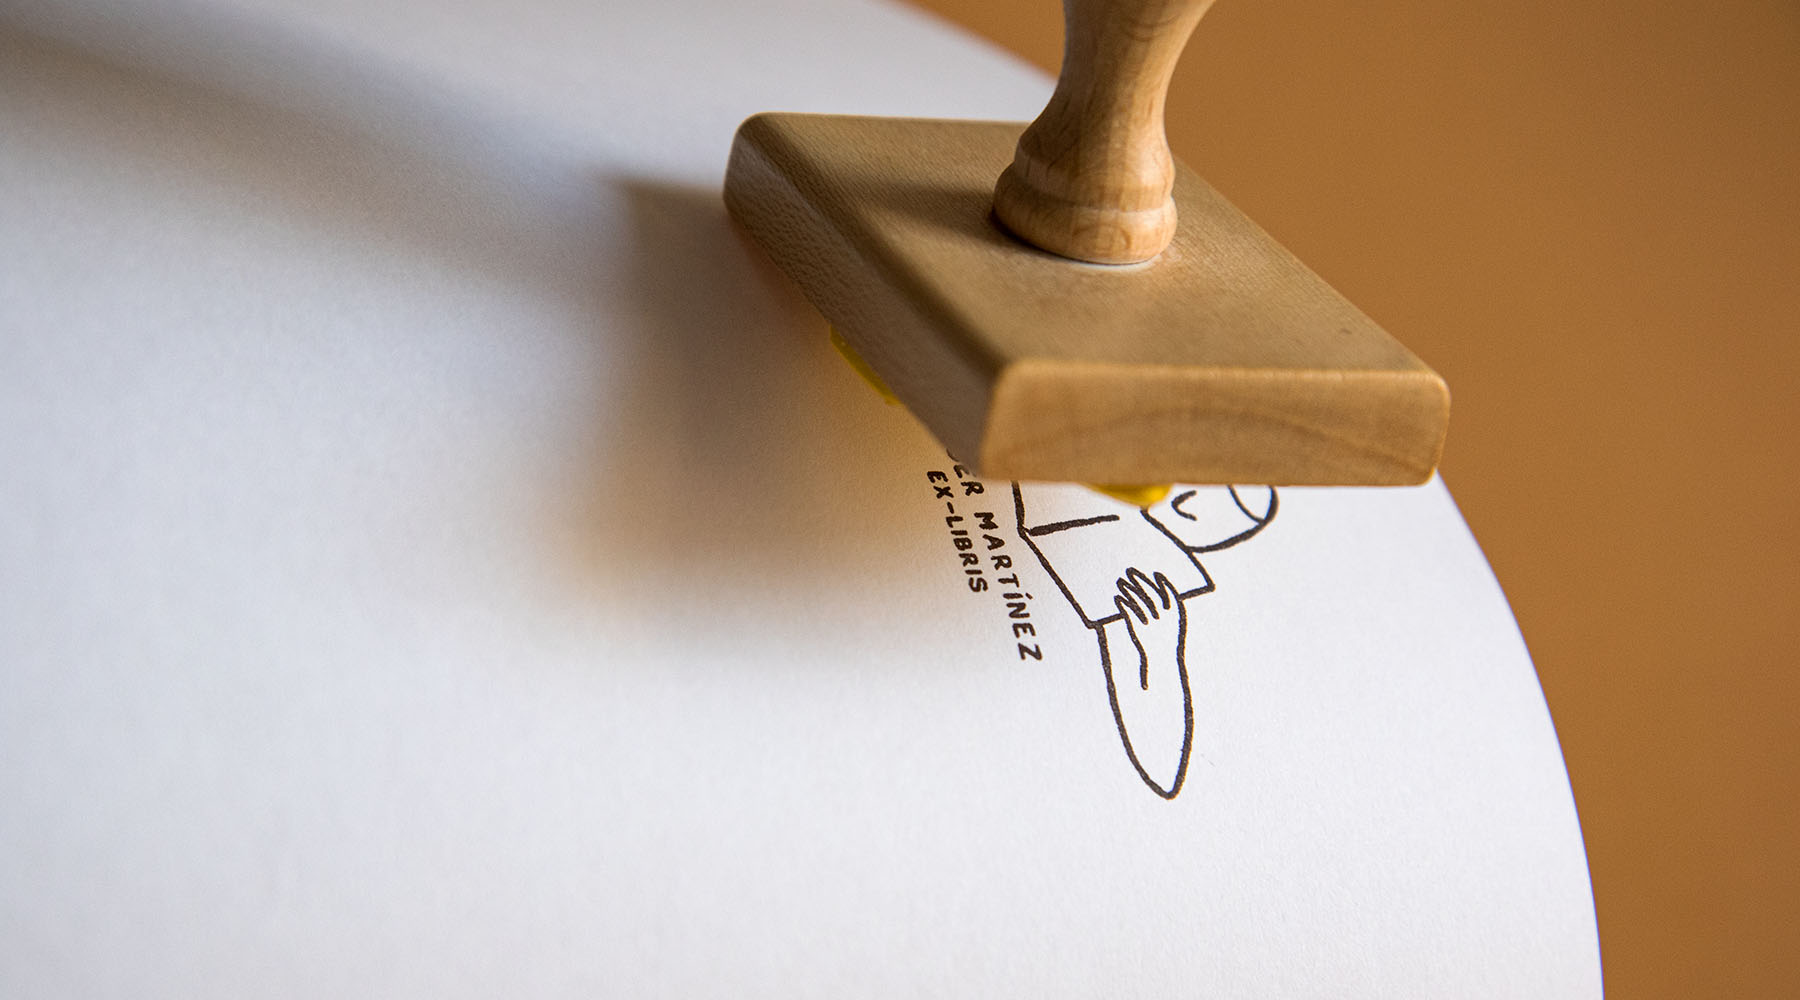 Un sello de madera prensado sobre papel, que deja una impresión en tinta de un dibujo lineal minimalista de una cara con el texto "a. martinez.